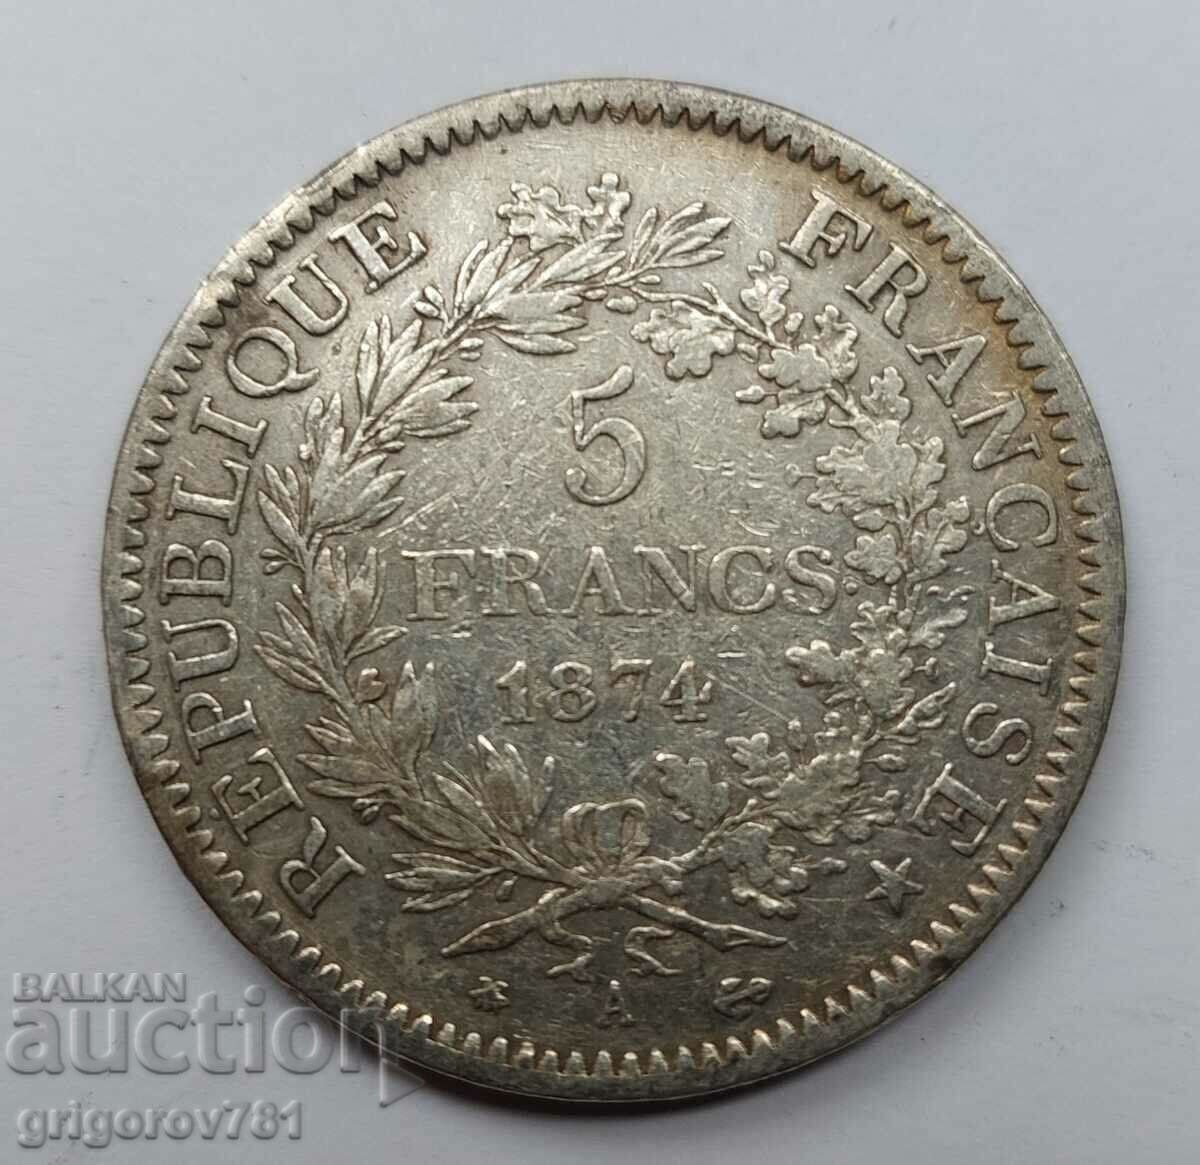 5 Φράγκα Ασήμι Γαλλία 1874 A - Ασημένιο νόμισμα #134